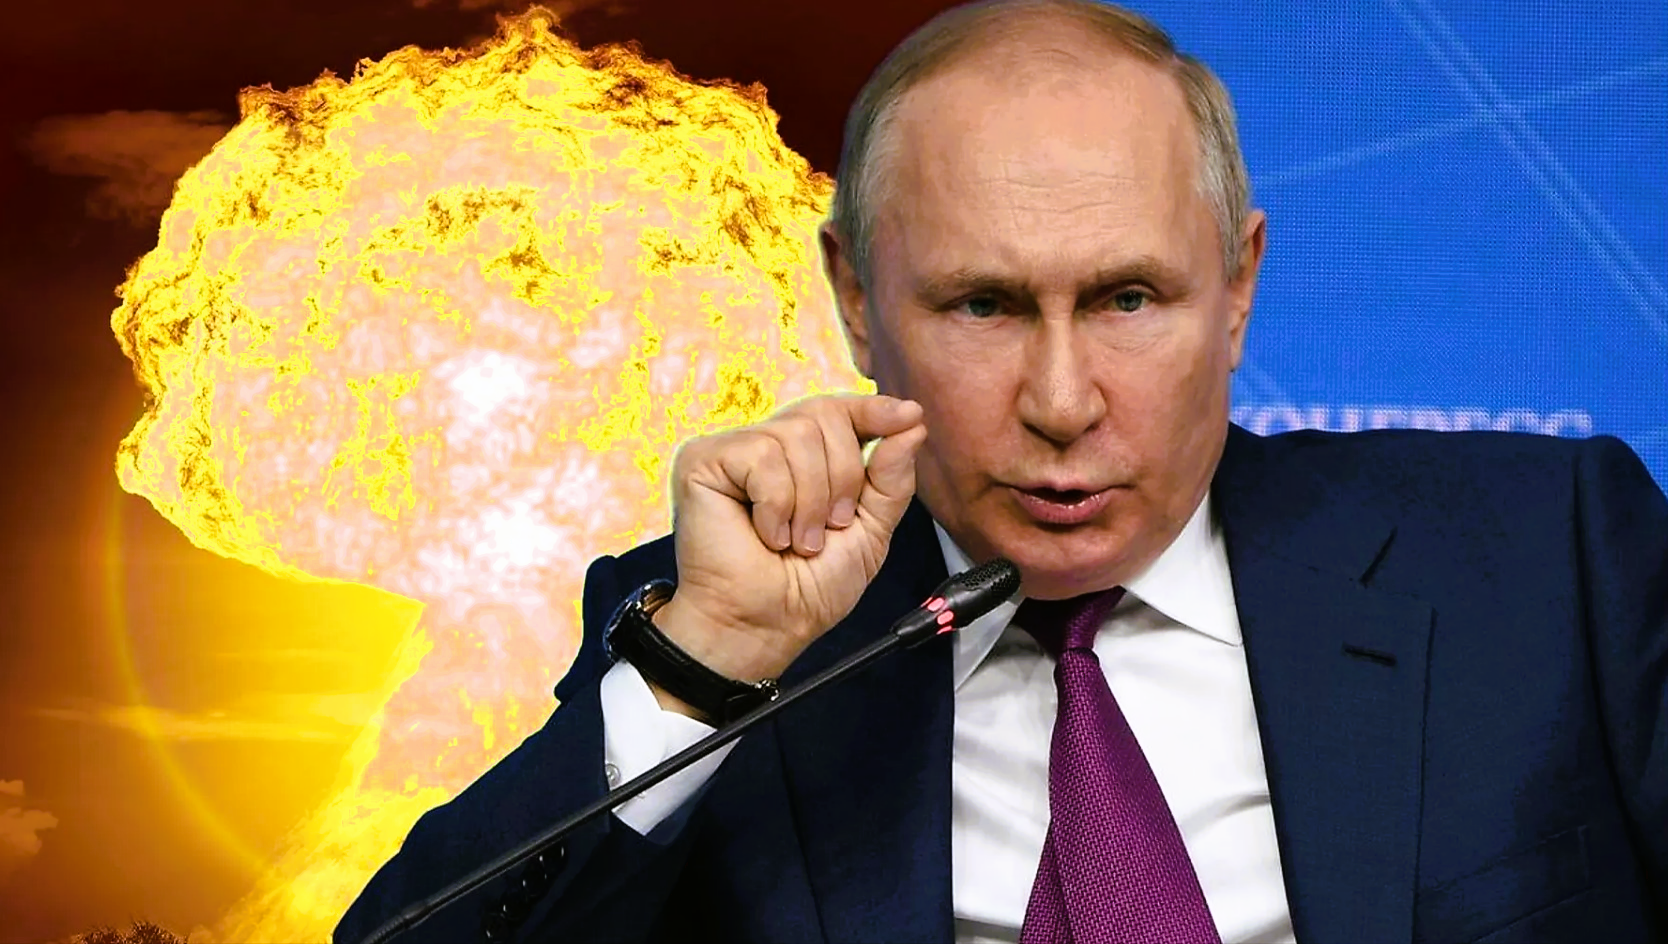 Eilmeldung! USA verhindern Atomschlag der Russen gegen die Ukraine!